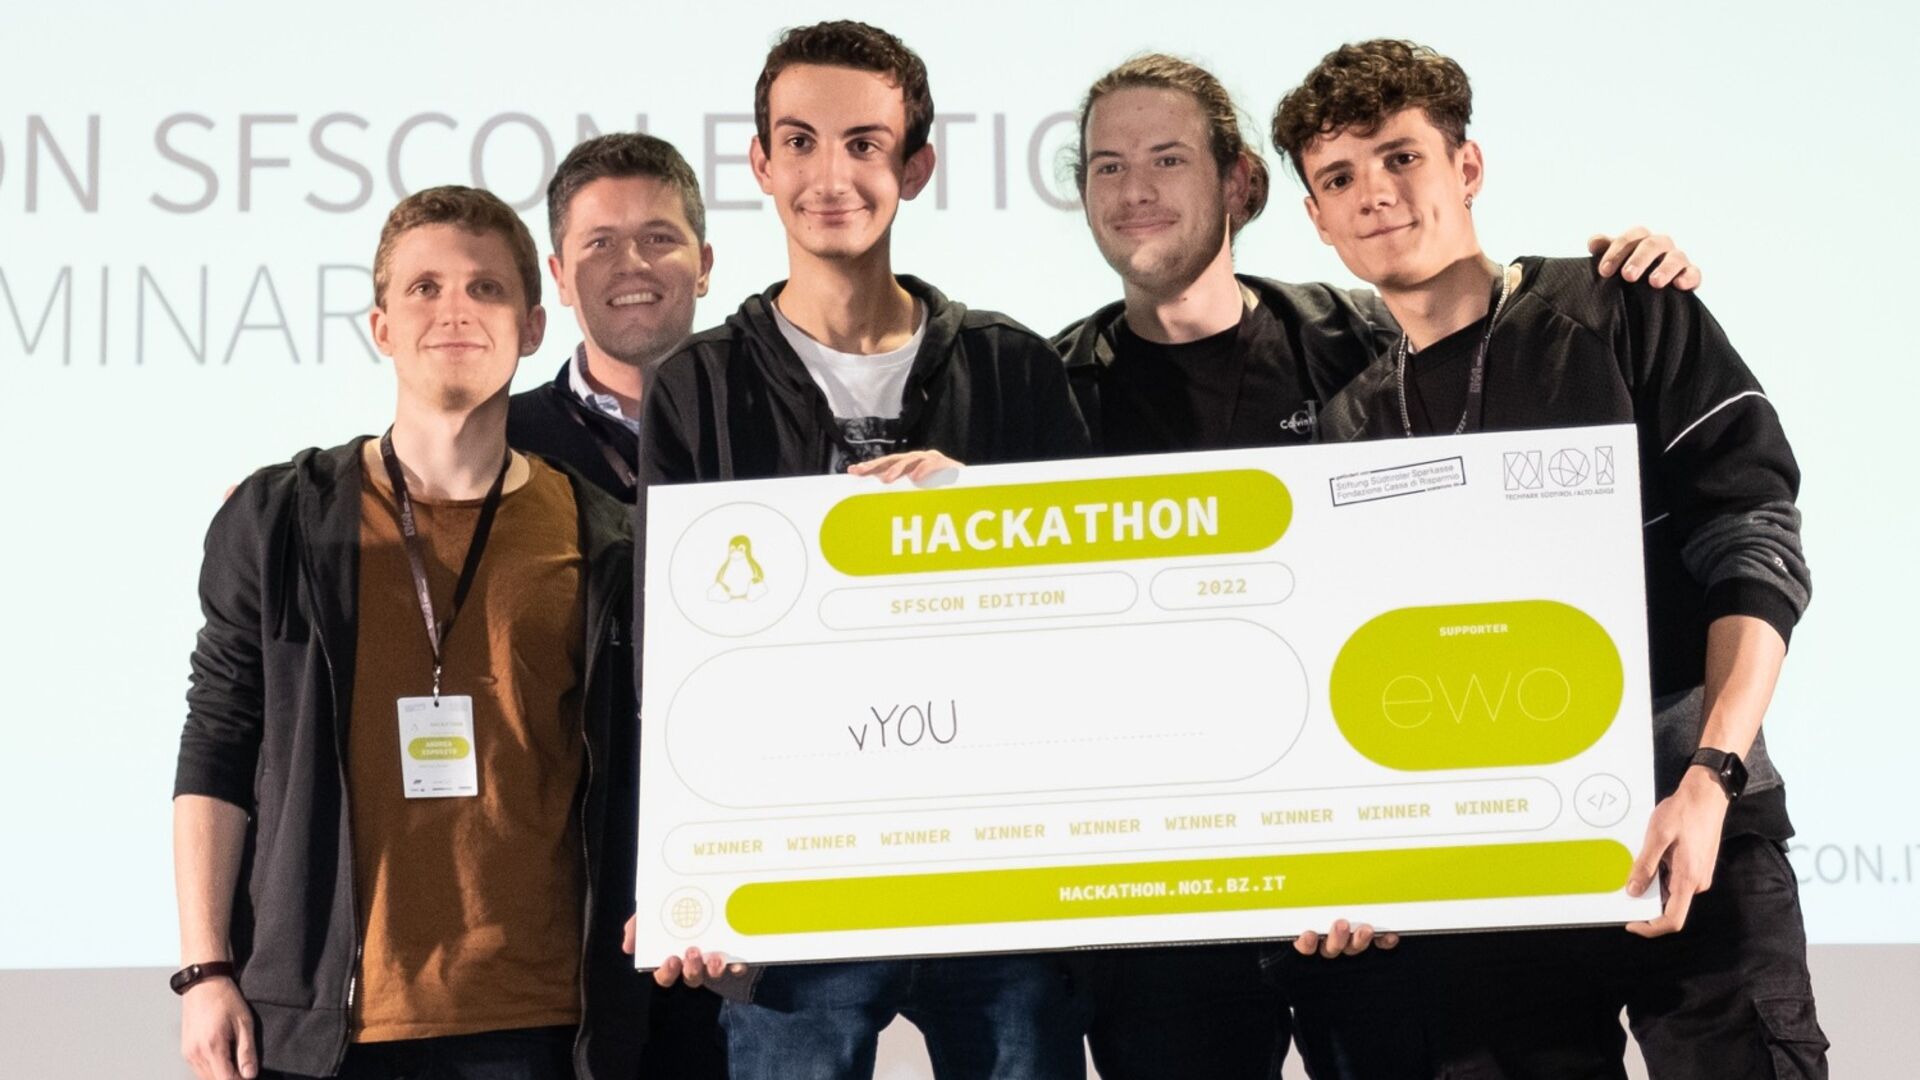 Fituesit e vitit 2022 të "NOI Hackathon SFScon Edition" në Bolzano më 11 dhe 12 nëntor Hack Progress for Progress Group